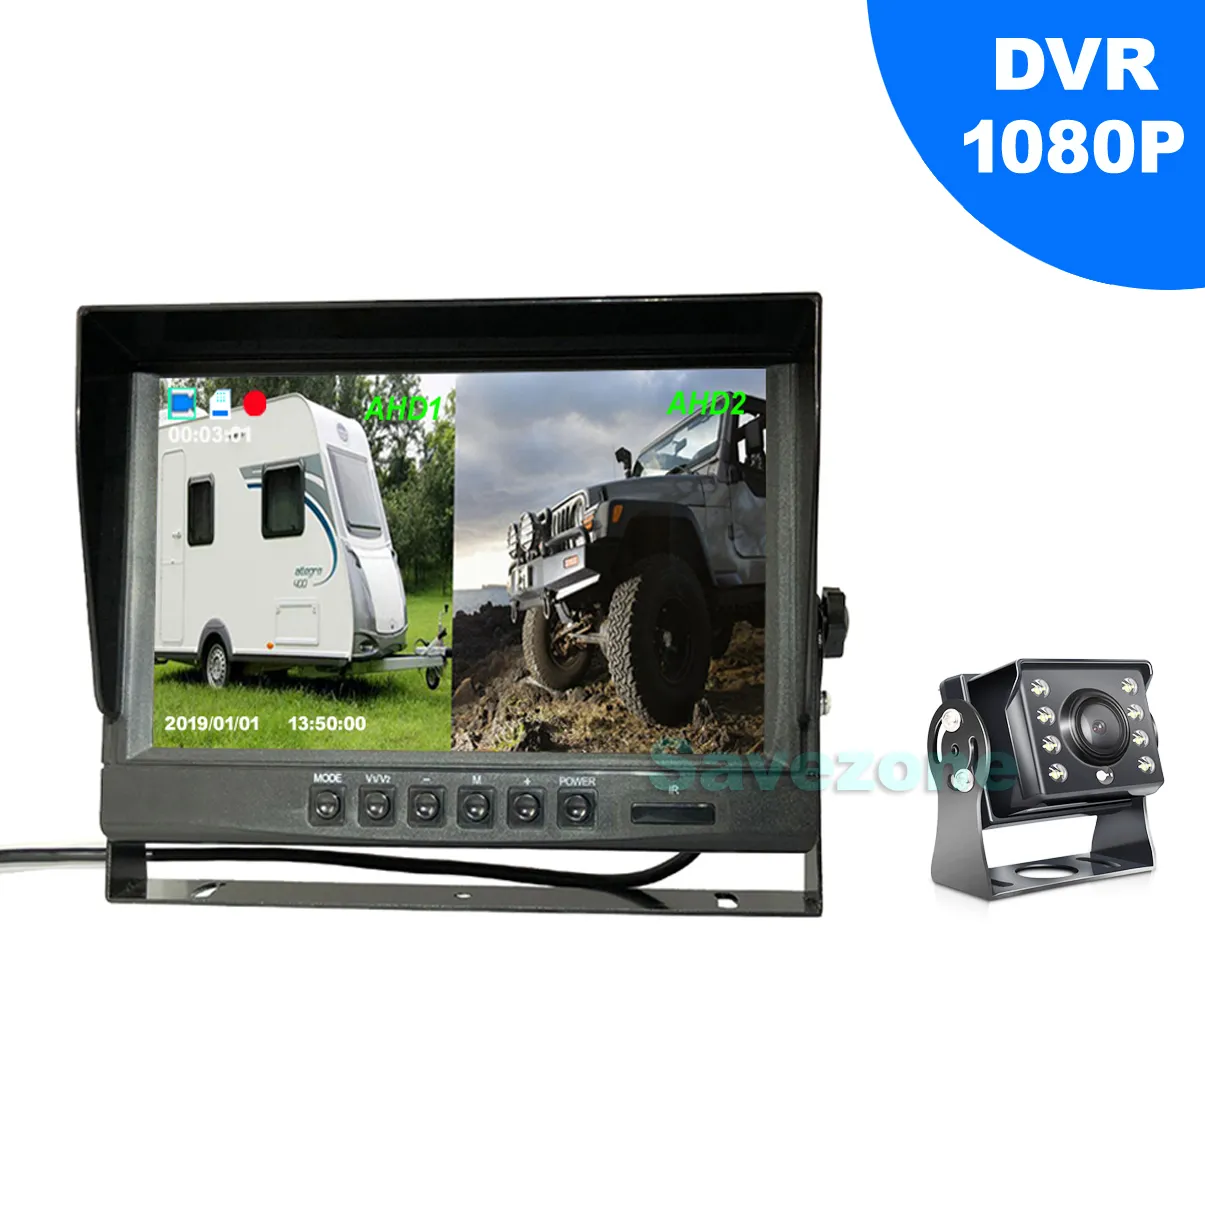 9 "IPS HD HD Coche Vista posterior Recorder DVR Monitor + AHD 1080P 8LED IR IP69K Kit de cámara de respaldo inversa 4Pin para RV BUS Camión Trailer